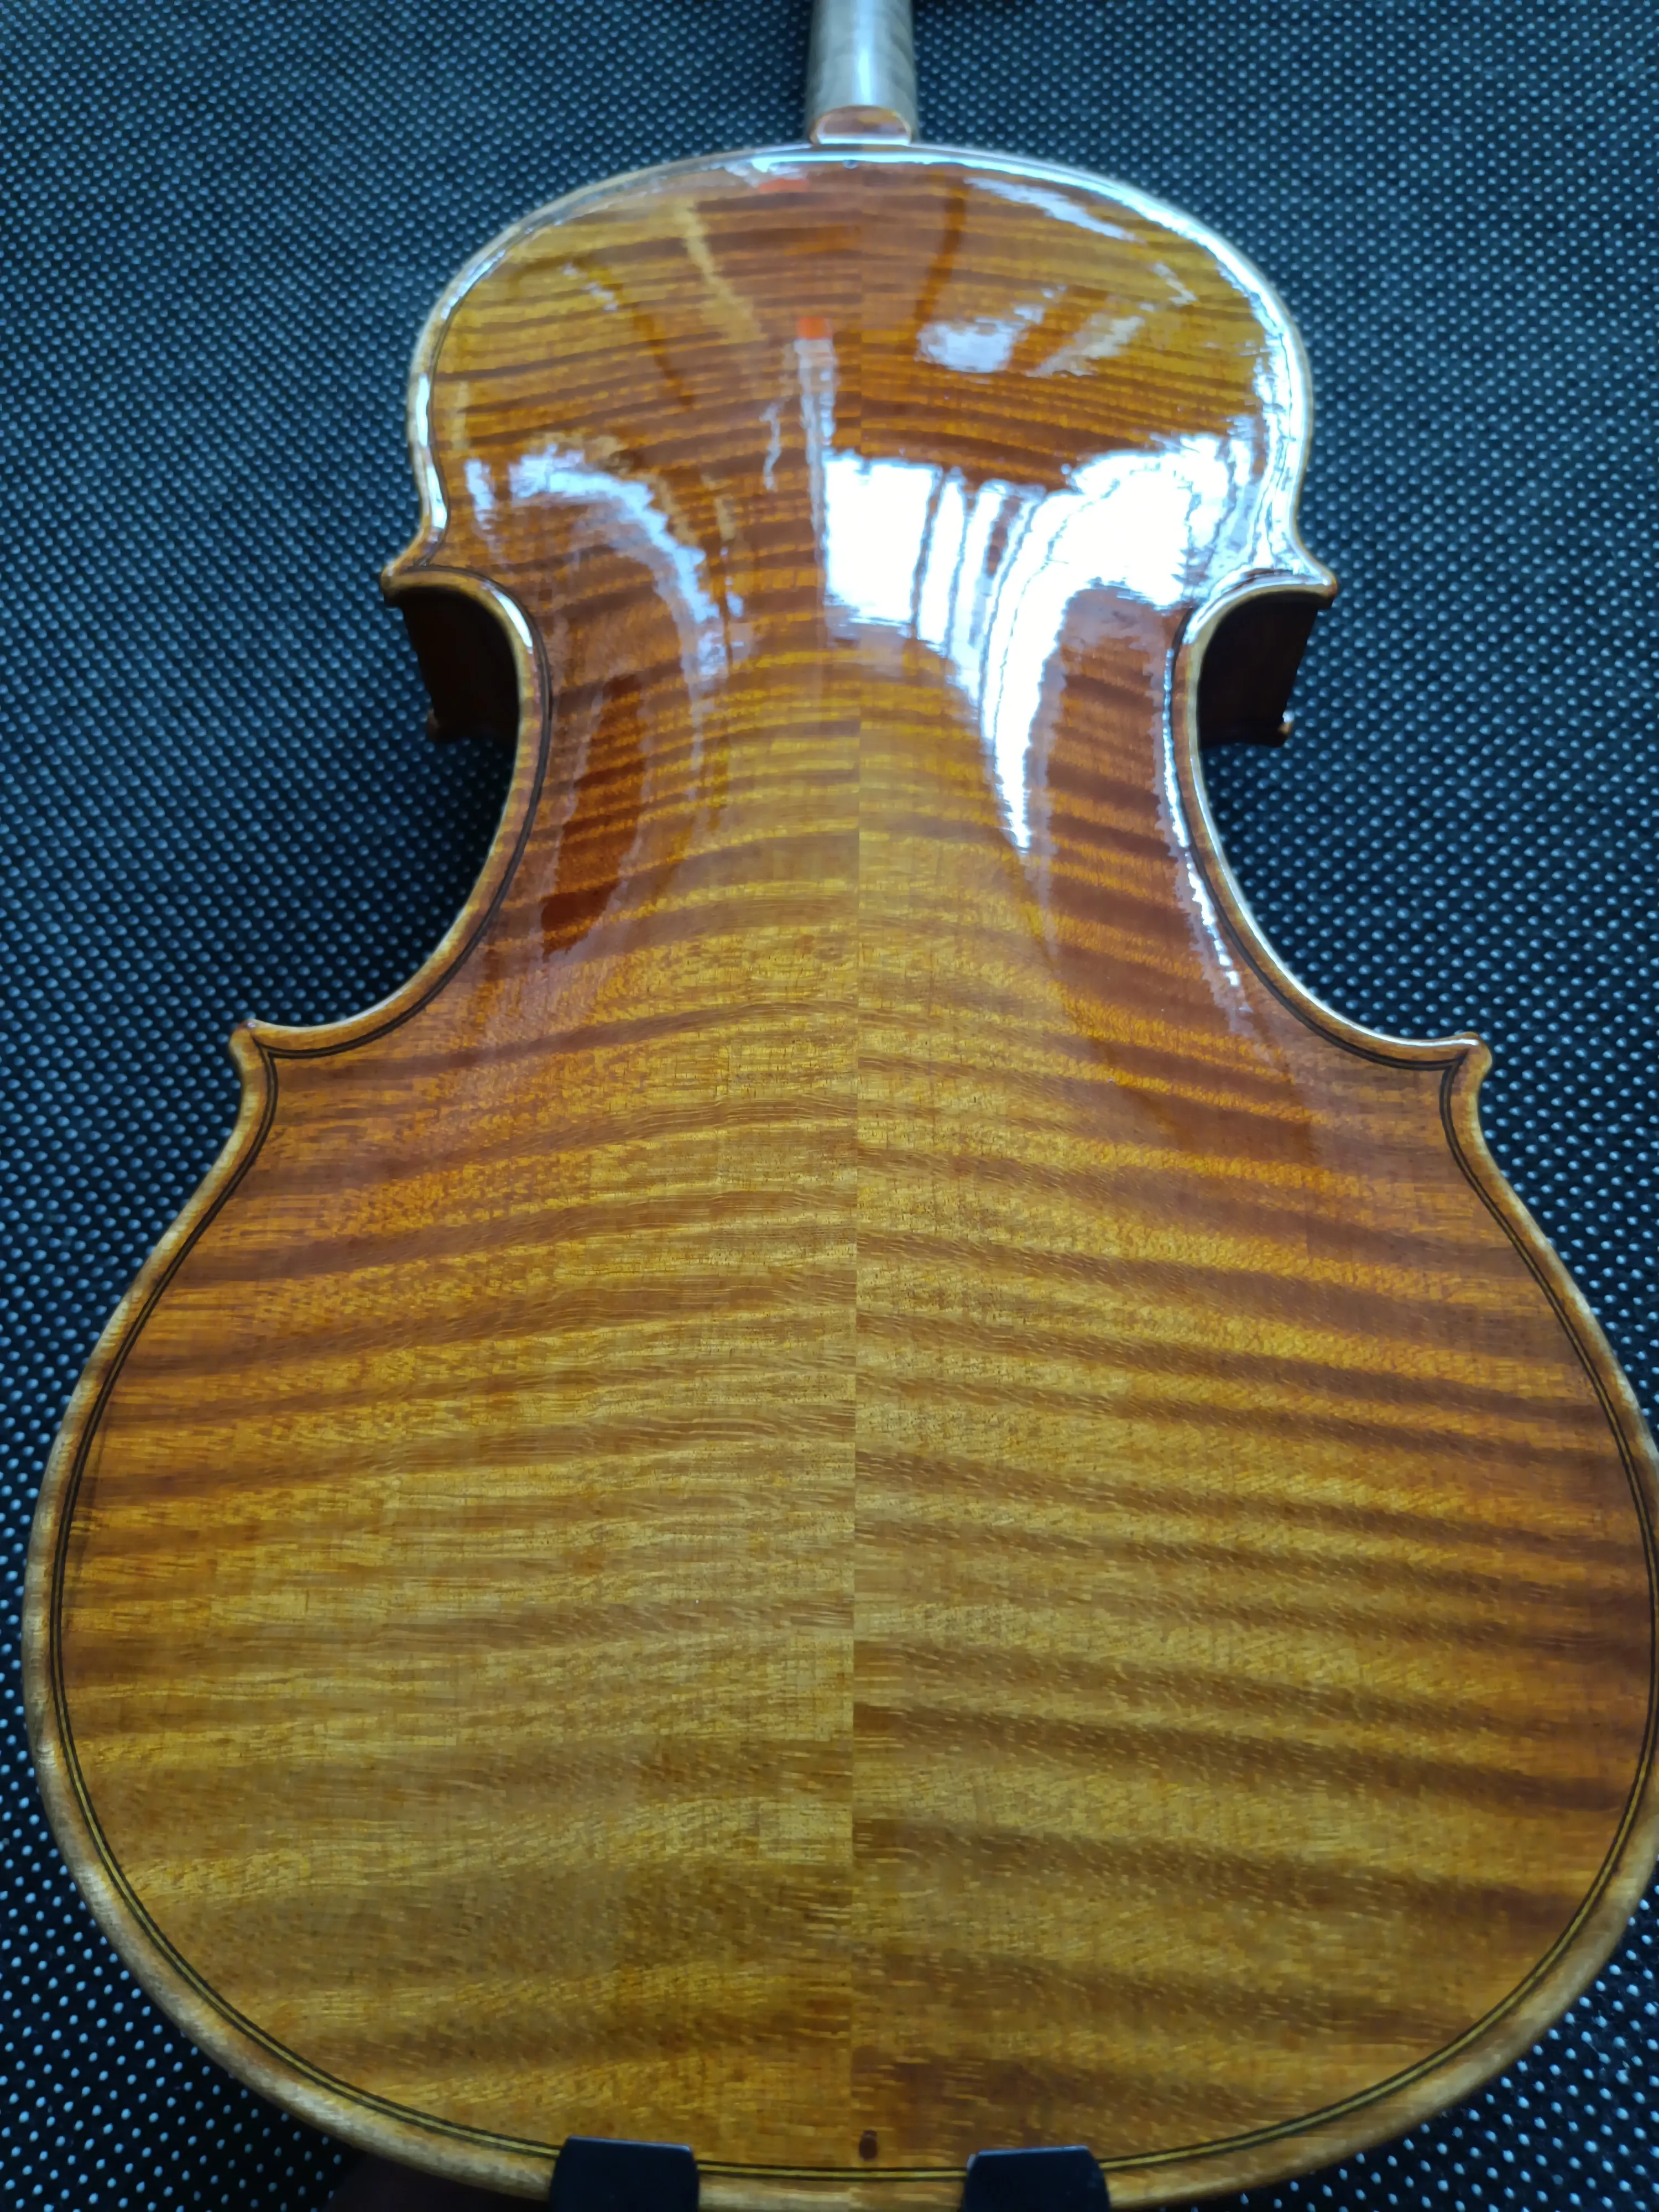 Профессиональная скрипка из европейского дерева 1742 скрипка очень профессиональная серебряная скрипка с очень хорошей масляной краской